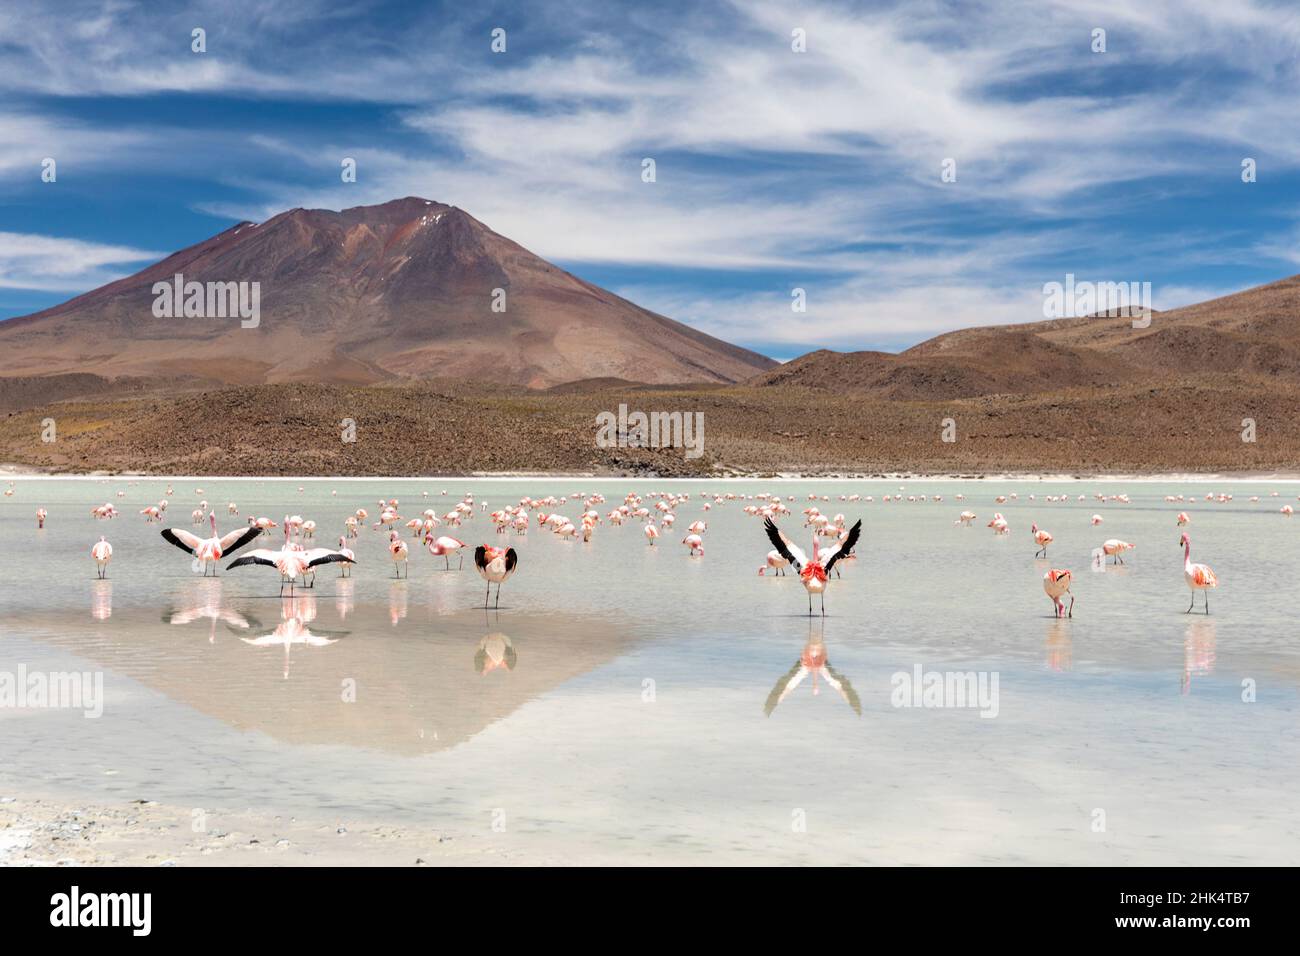 Flamants se nourrissant à Laguna Canapa, un lac de sel endorheique dans l'altiplano, département de Potosi, Bolivie, Amérique du Sud Banque D'Images